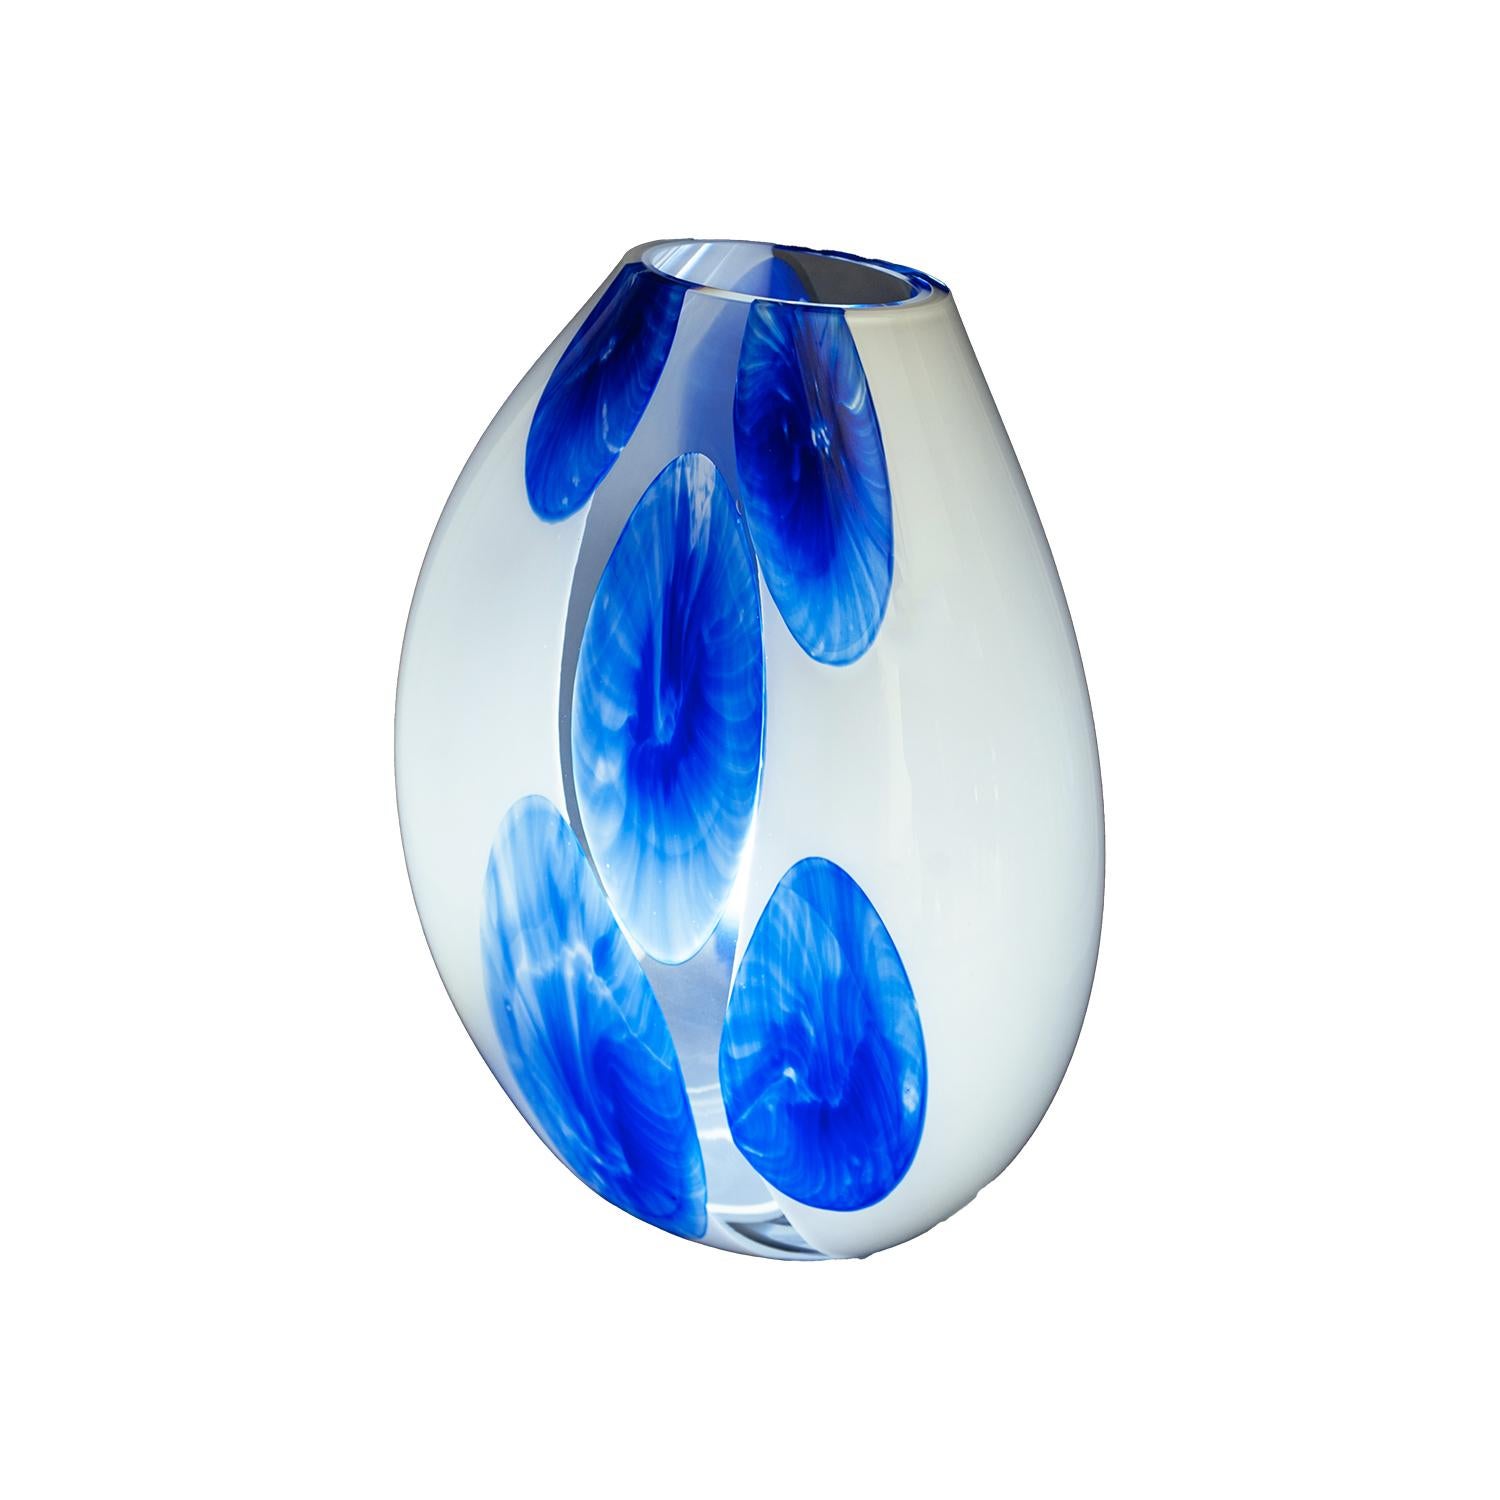 Illumina il tuo spazio con l'eleganza e l'arte del vetro soffiato di Murano. Presentiamo una lampada da tavolo unica, realizzata con maestria dai rinomati maestri vetrai di Murano. Questa lampada da tavolo, con il suo splendido colore bianco latte e